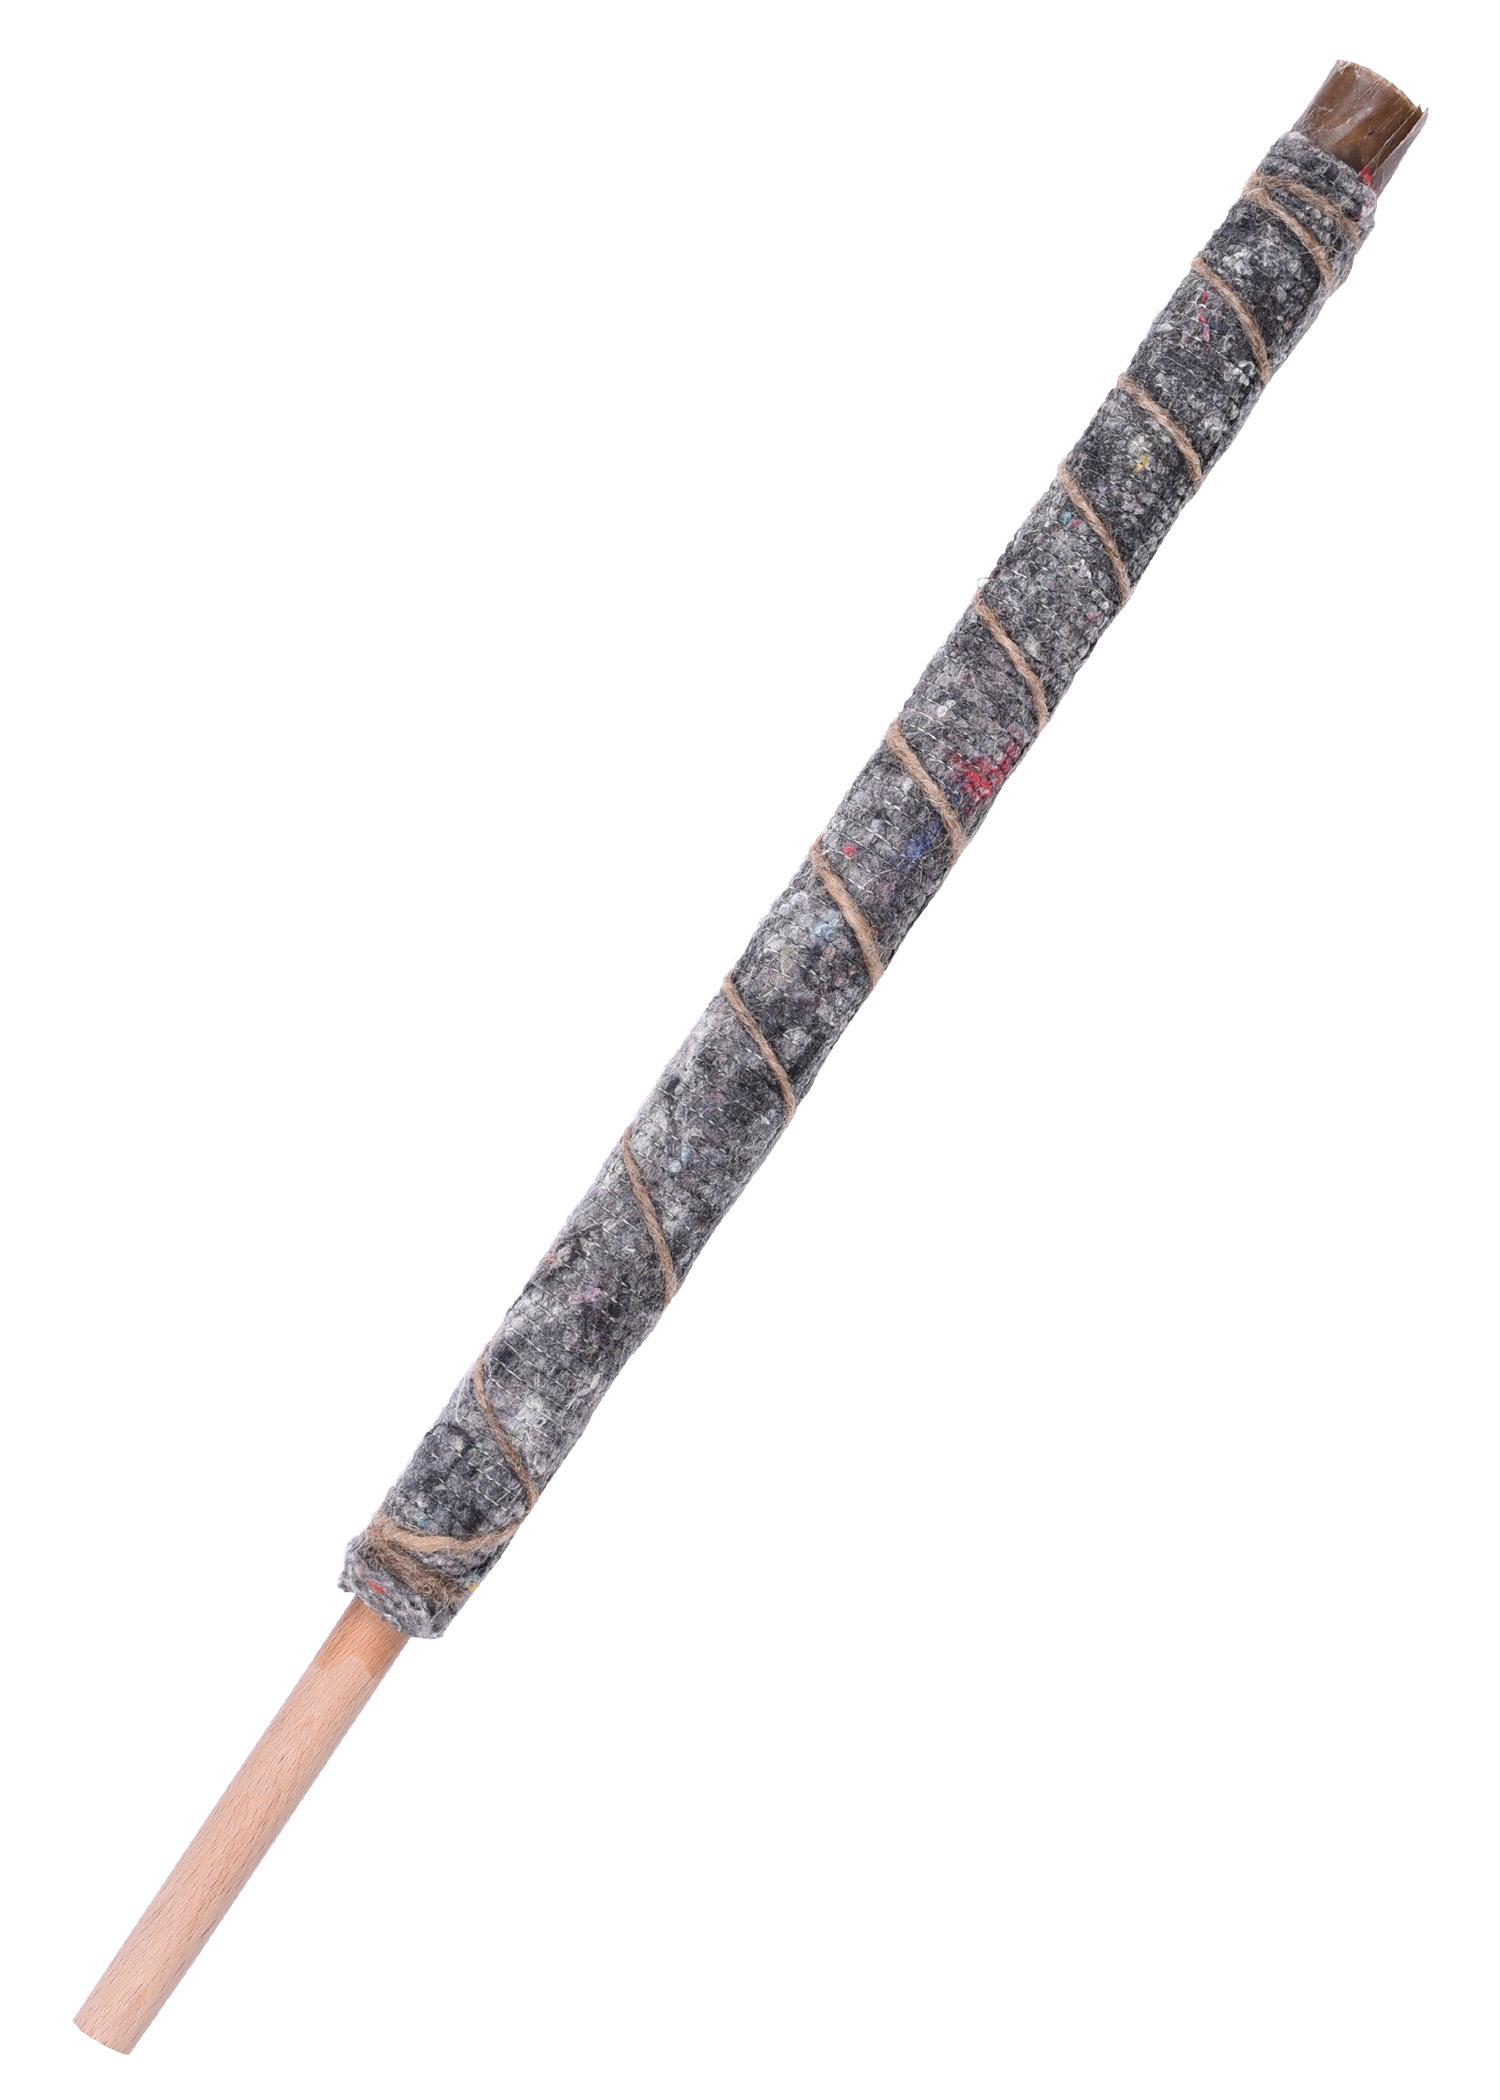 Wachsfackel aus hochwertigem Fackeltuch, 40 cm, Menge 50